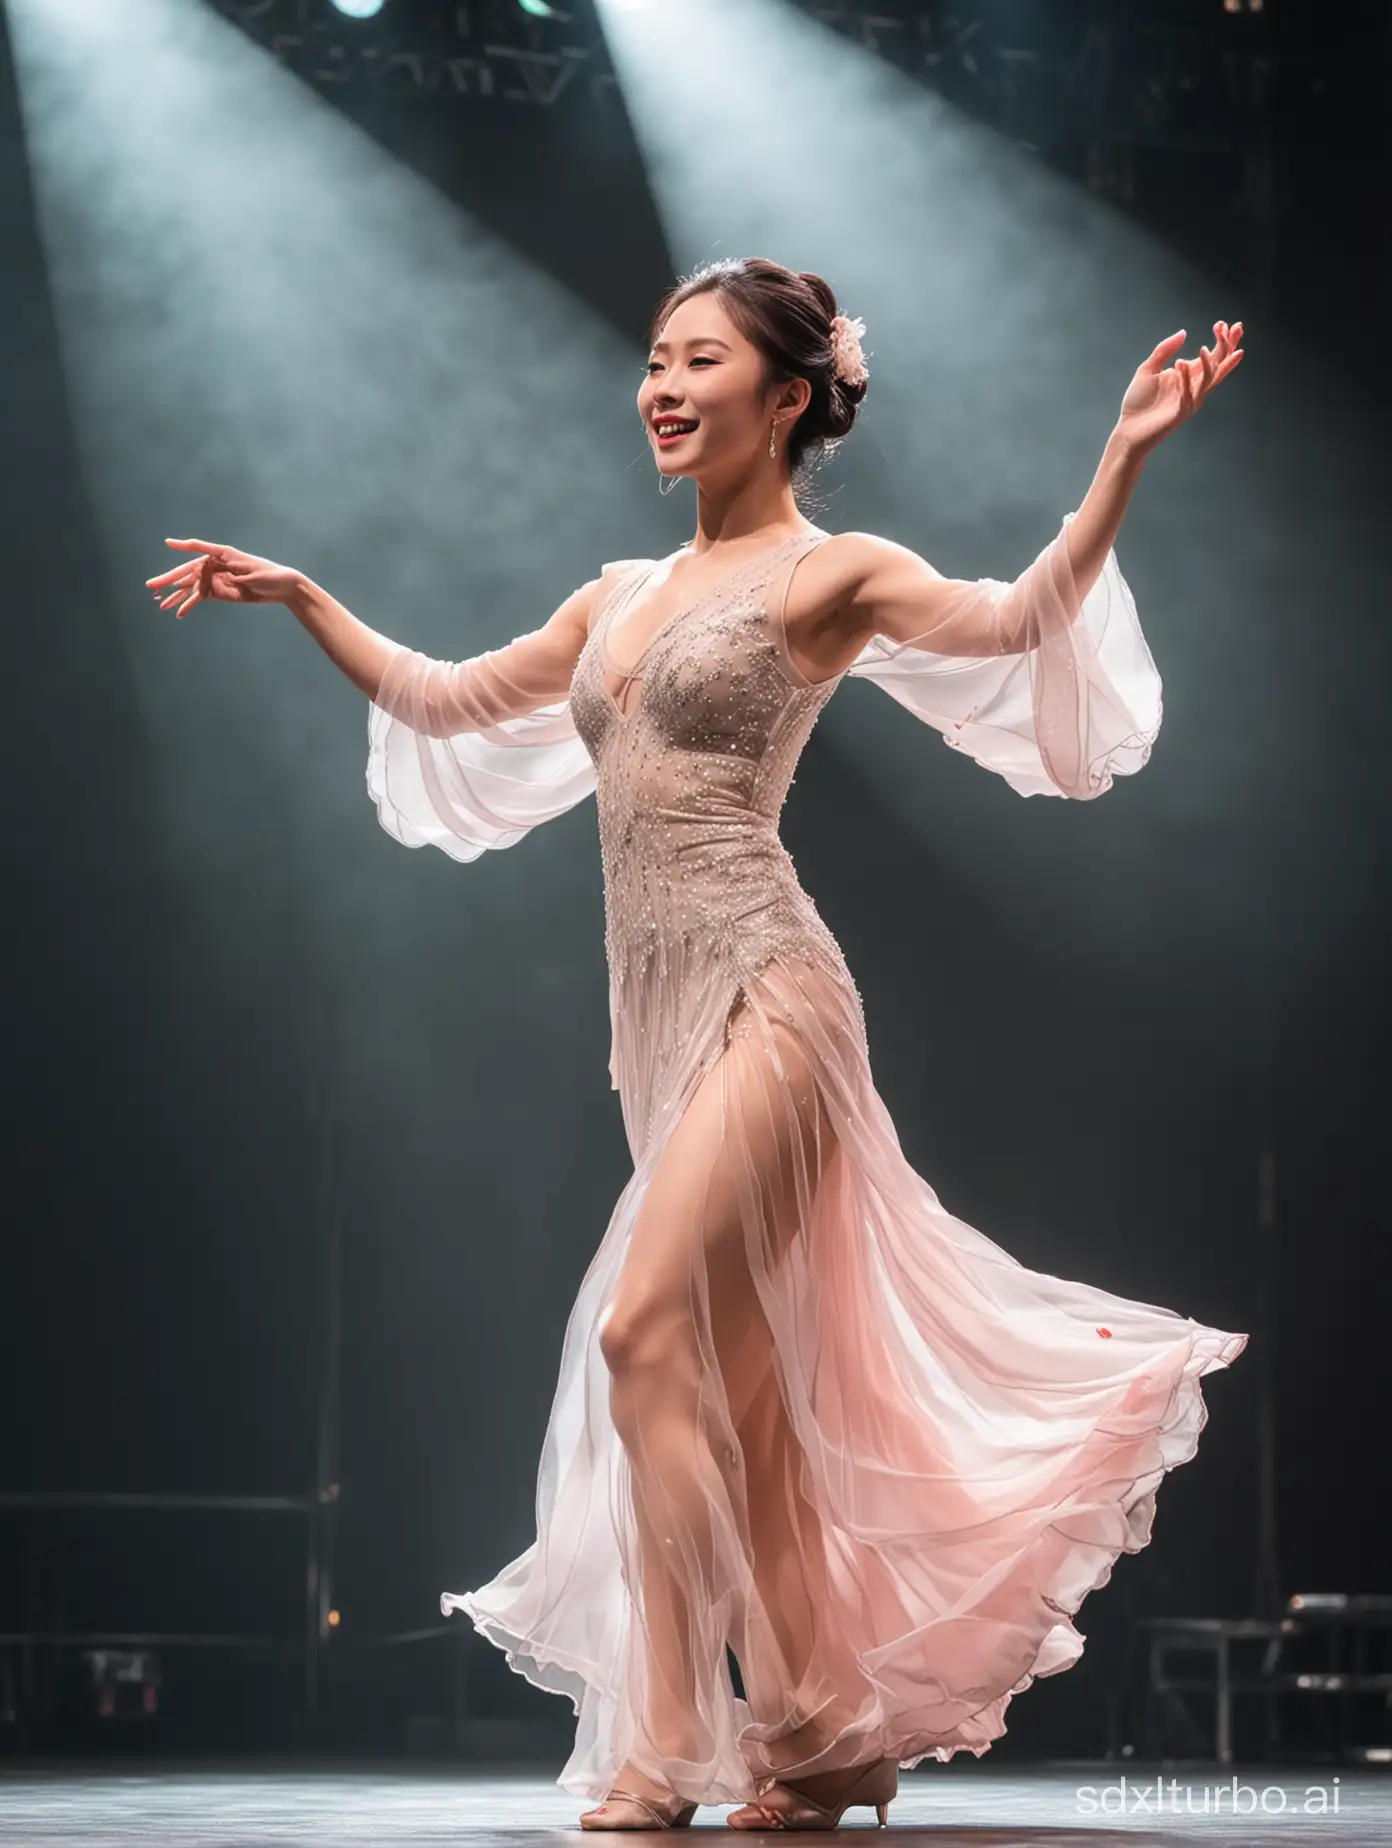 一个美丽的中国女人在舞台上忘情地跳舞